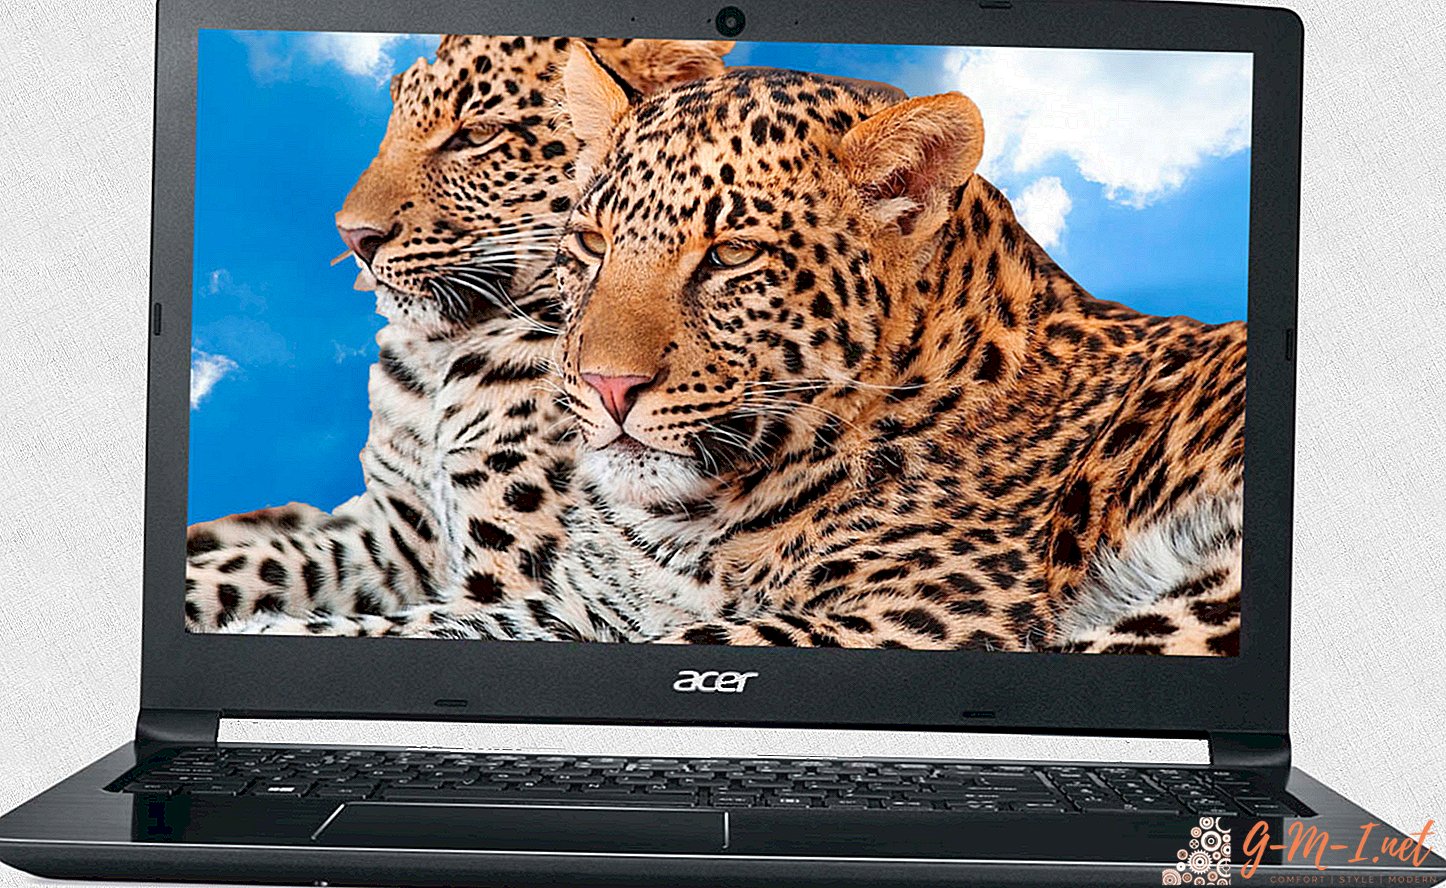 Laptop para Photoshop - qual é o melhor?